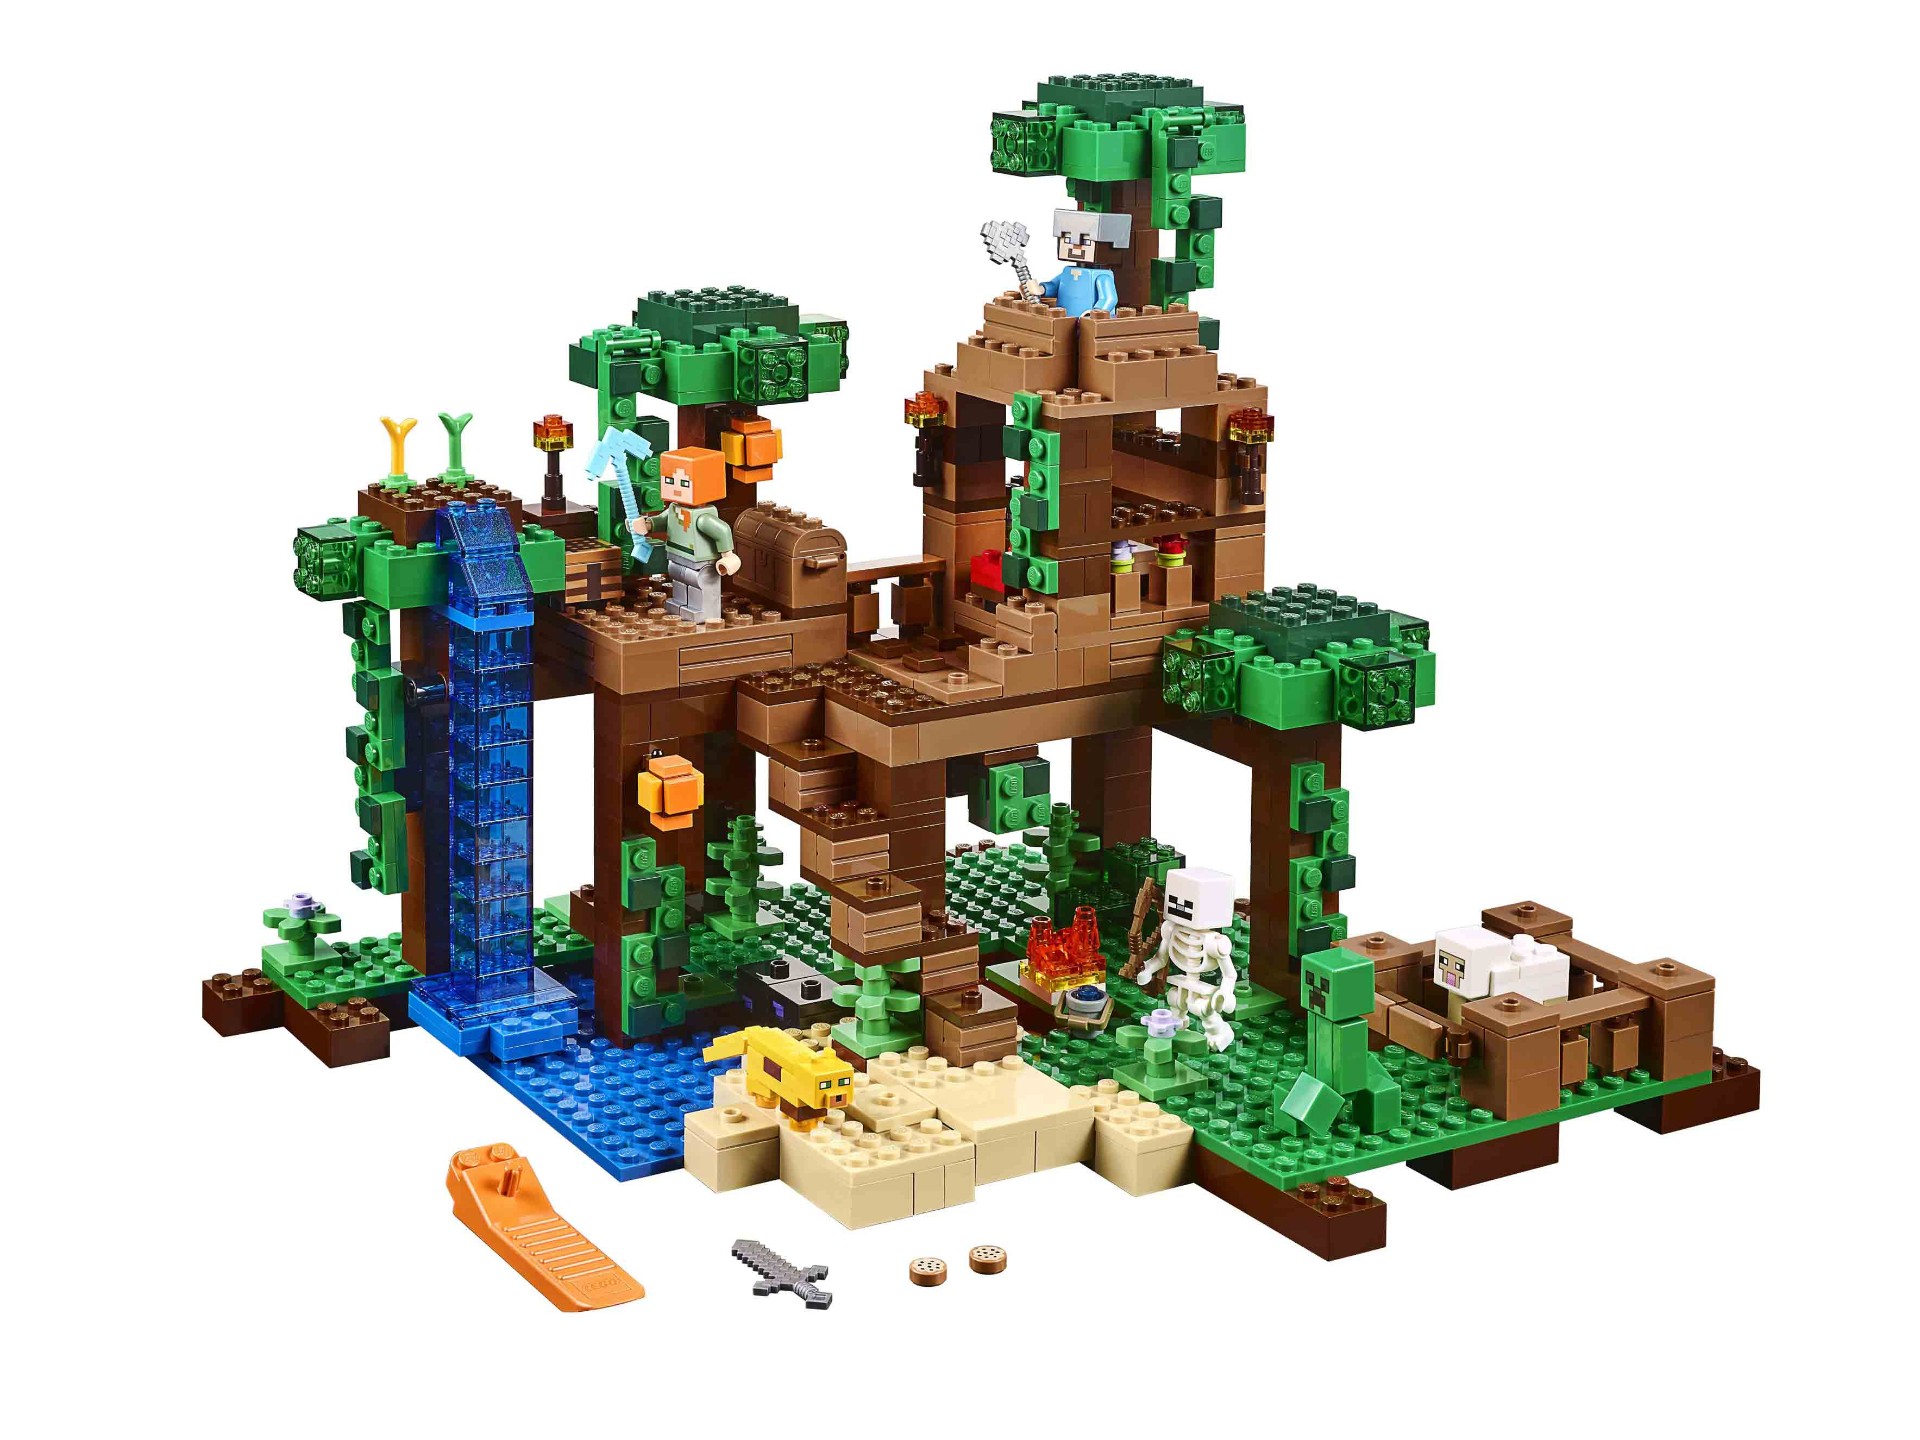 Конструктор Bl «Домик на дереве в джунглях» 10471 (Minecraft 21125) / 718 деталей